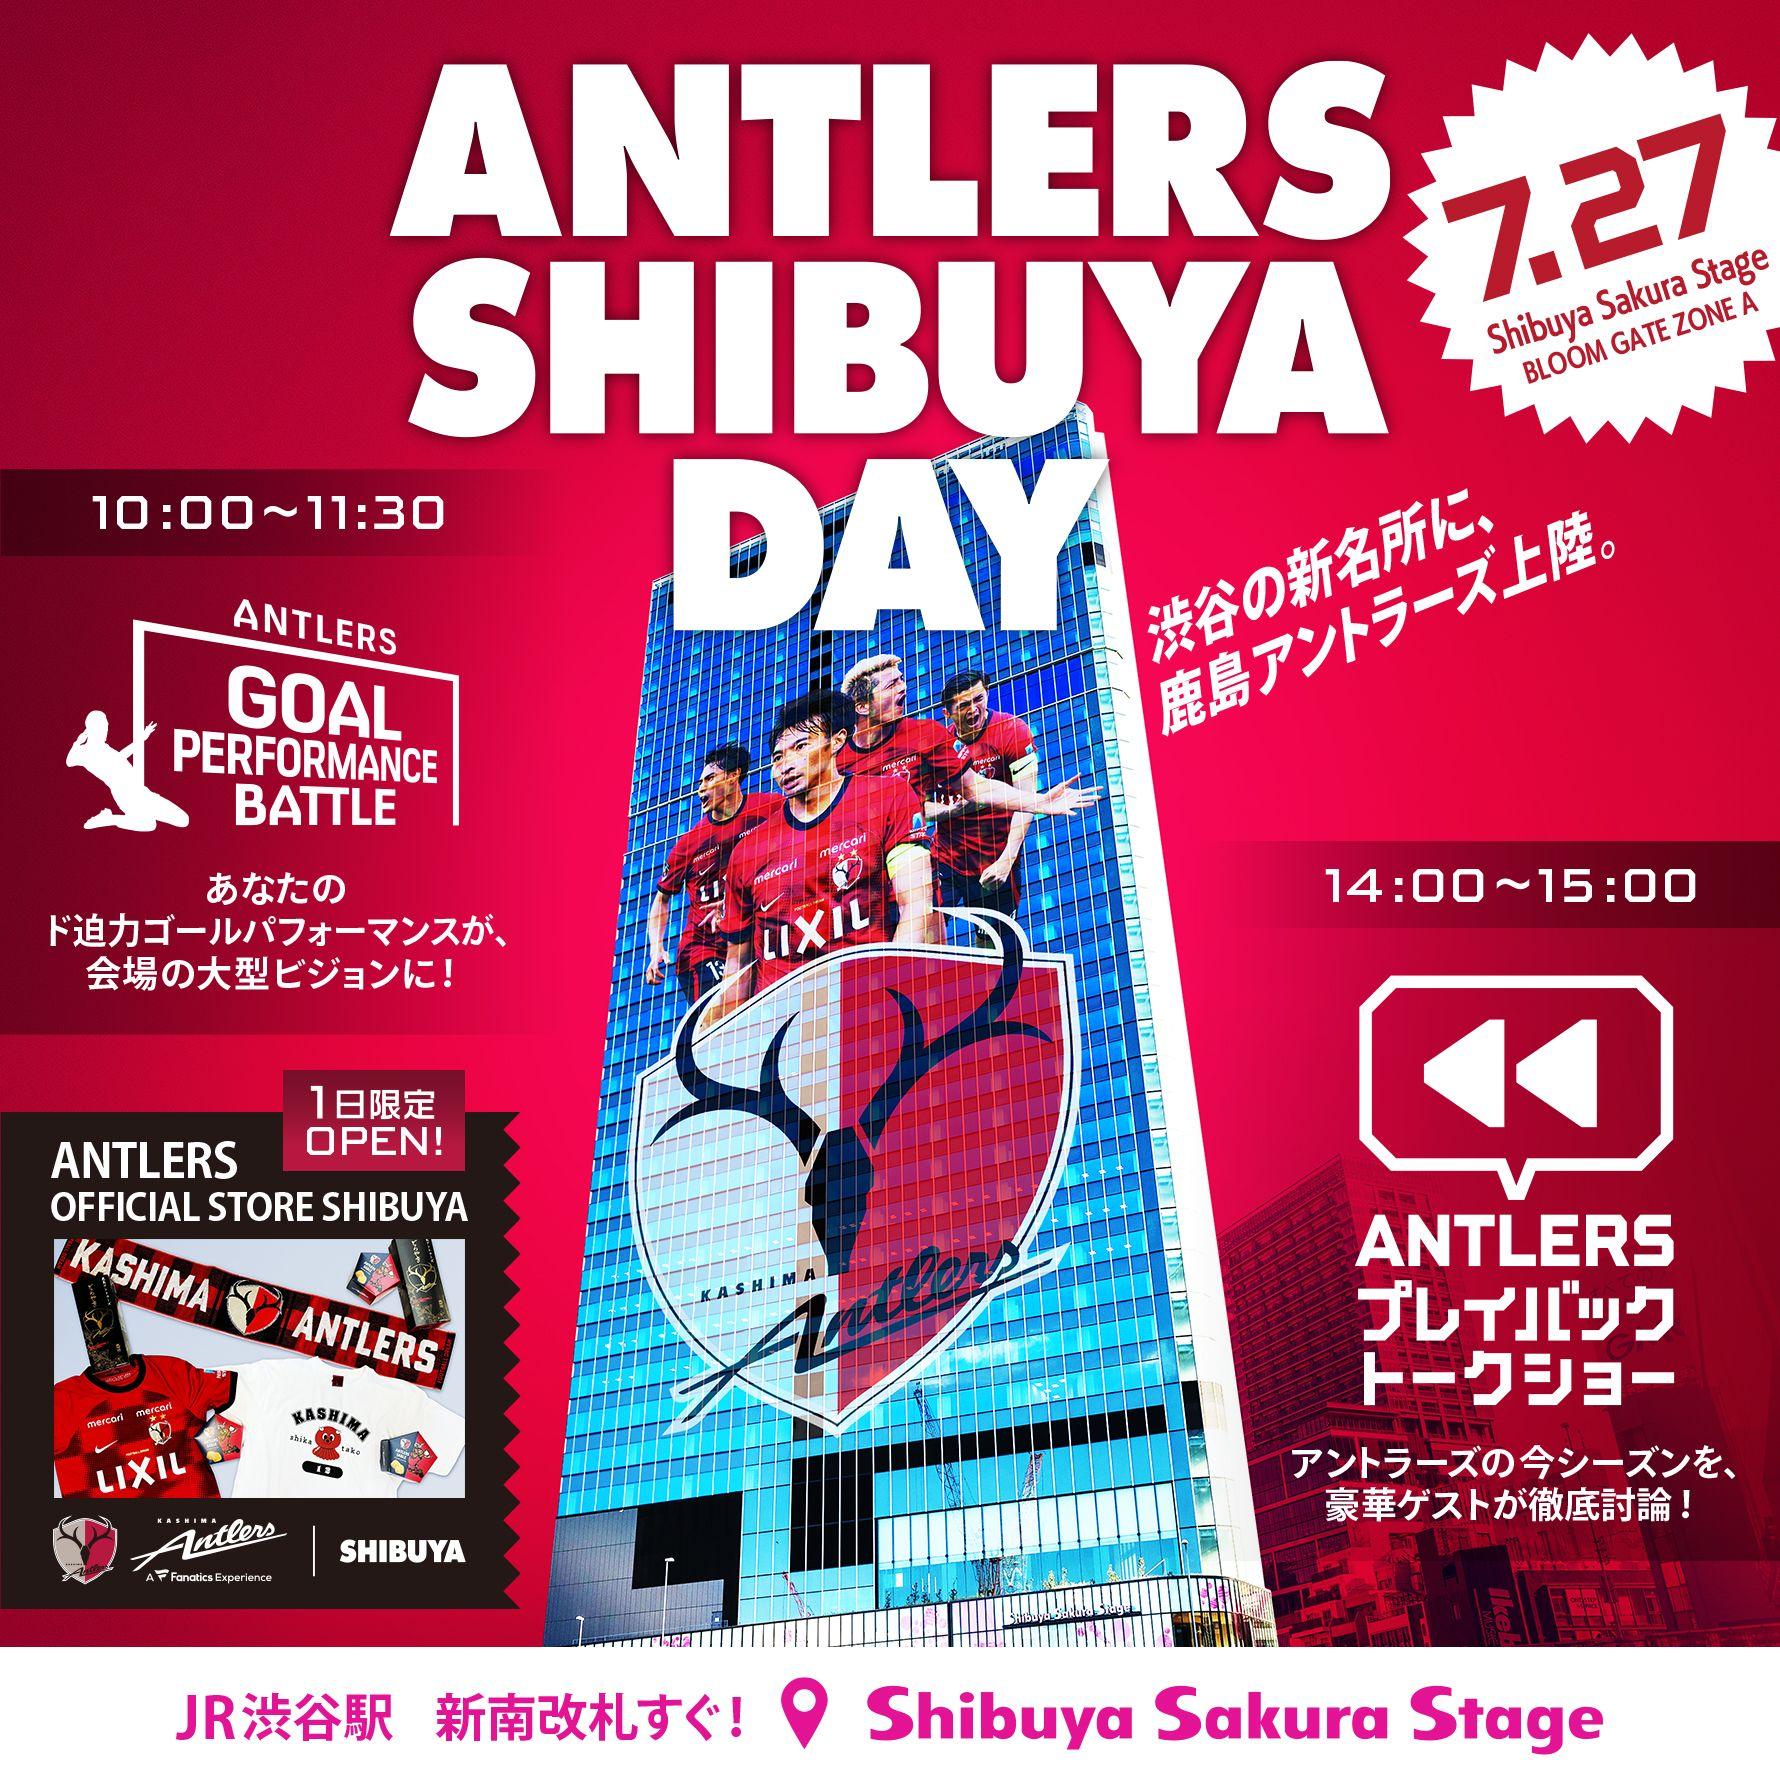 渋谷サクラステージにアントラーズが登場！ 7/27「ANTLERS SHIBUYA DAY」開催